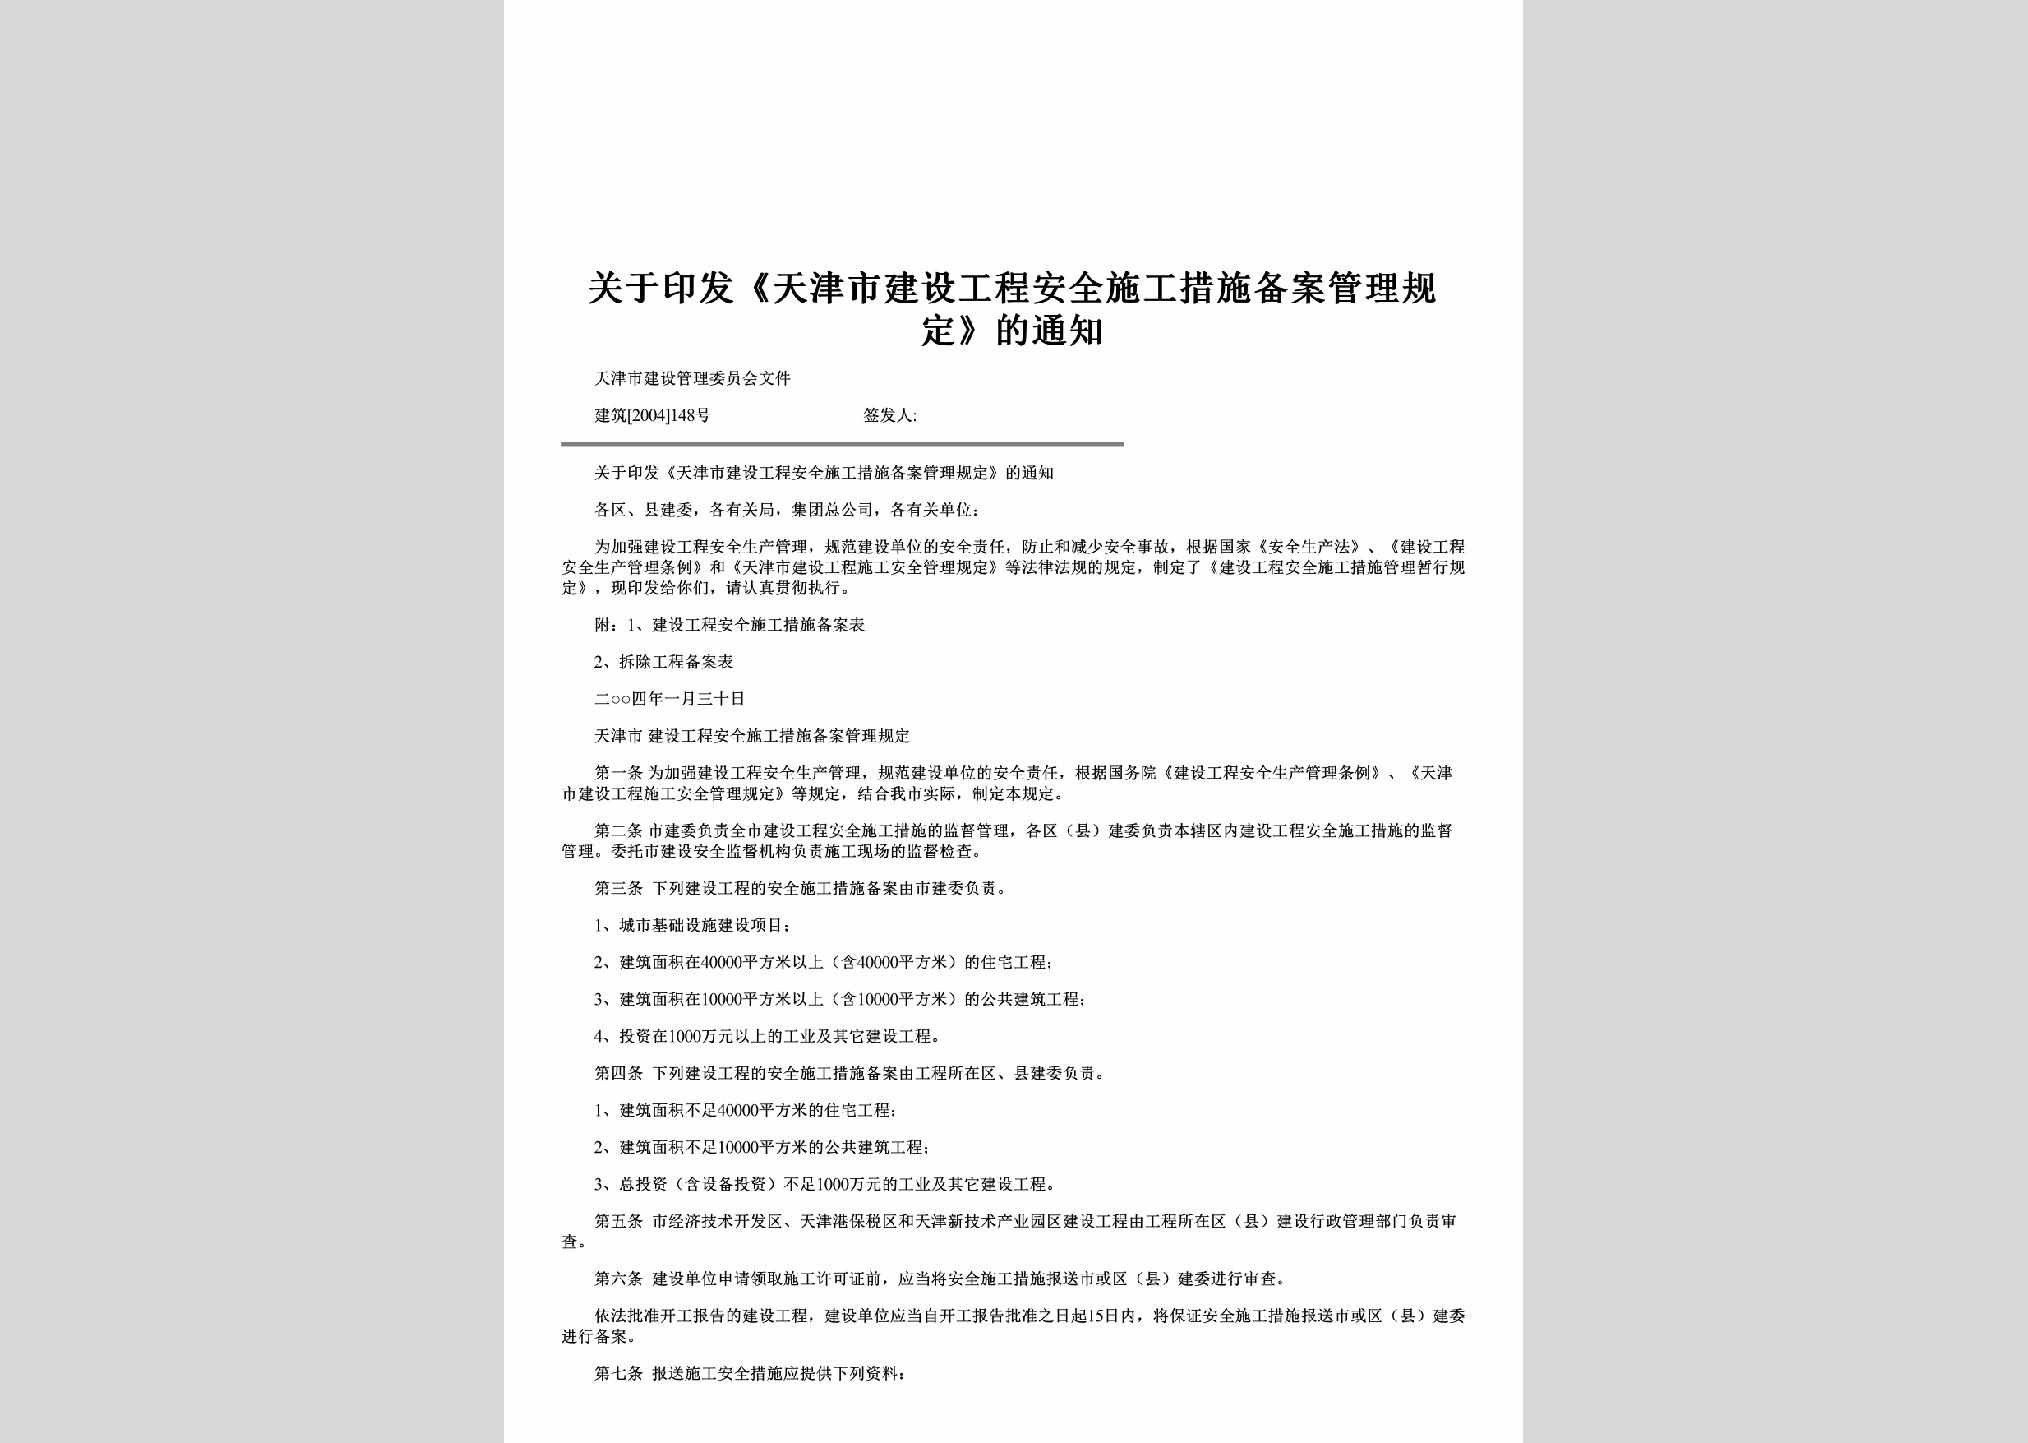 建筑[2004]148号：关于印发《天津市建设工程安全施工措施备案管理规定》的通知